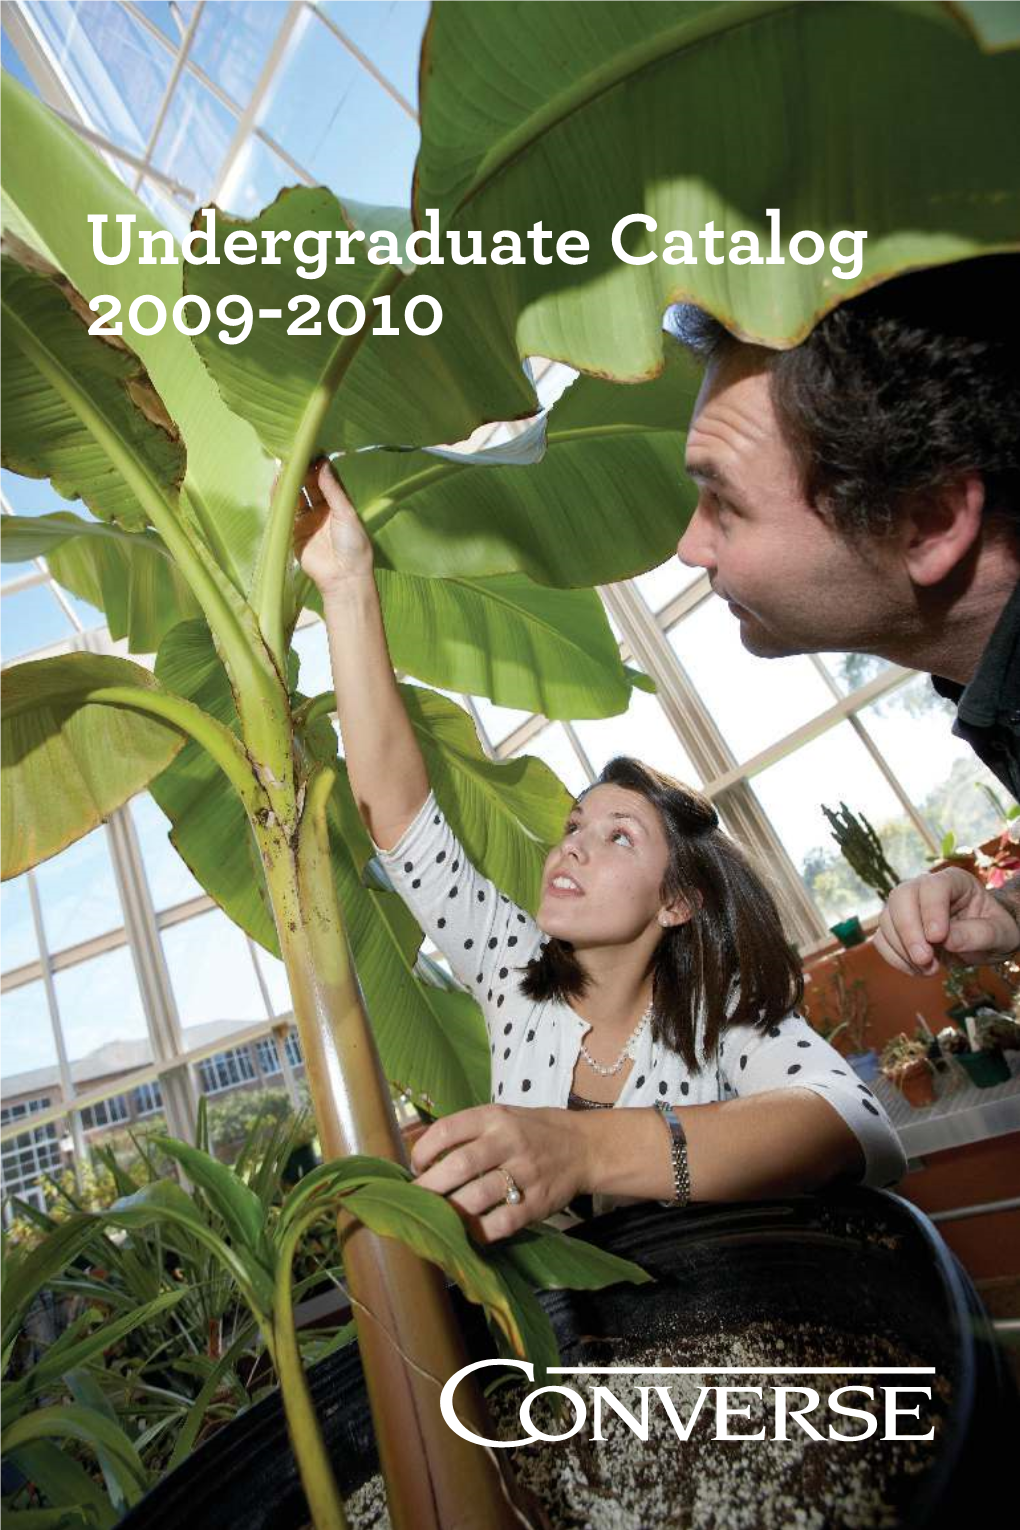 2009-2010 Undergraduate Catalog